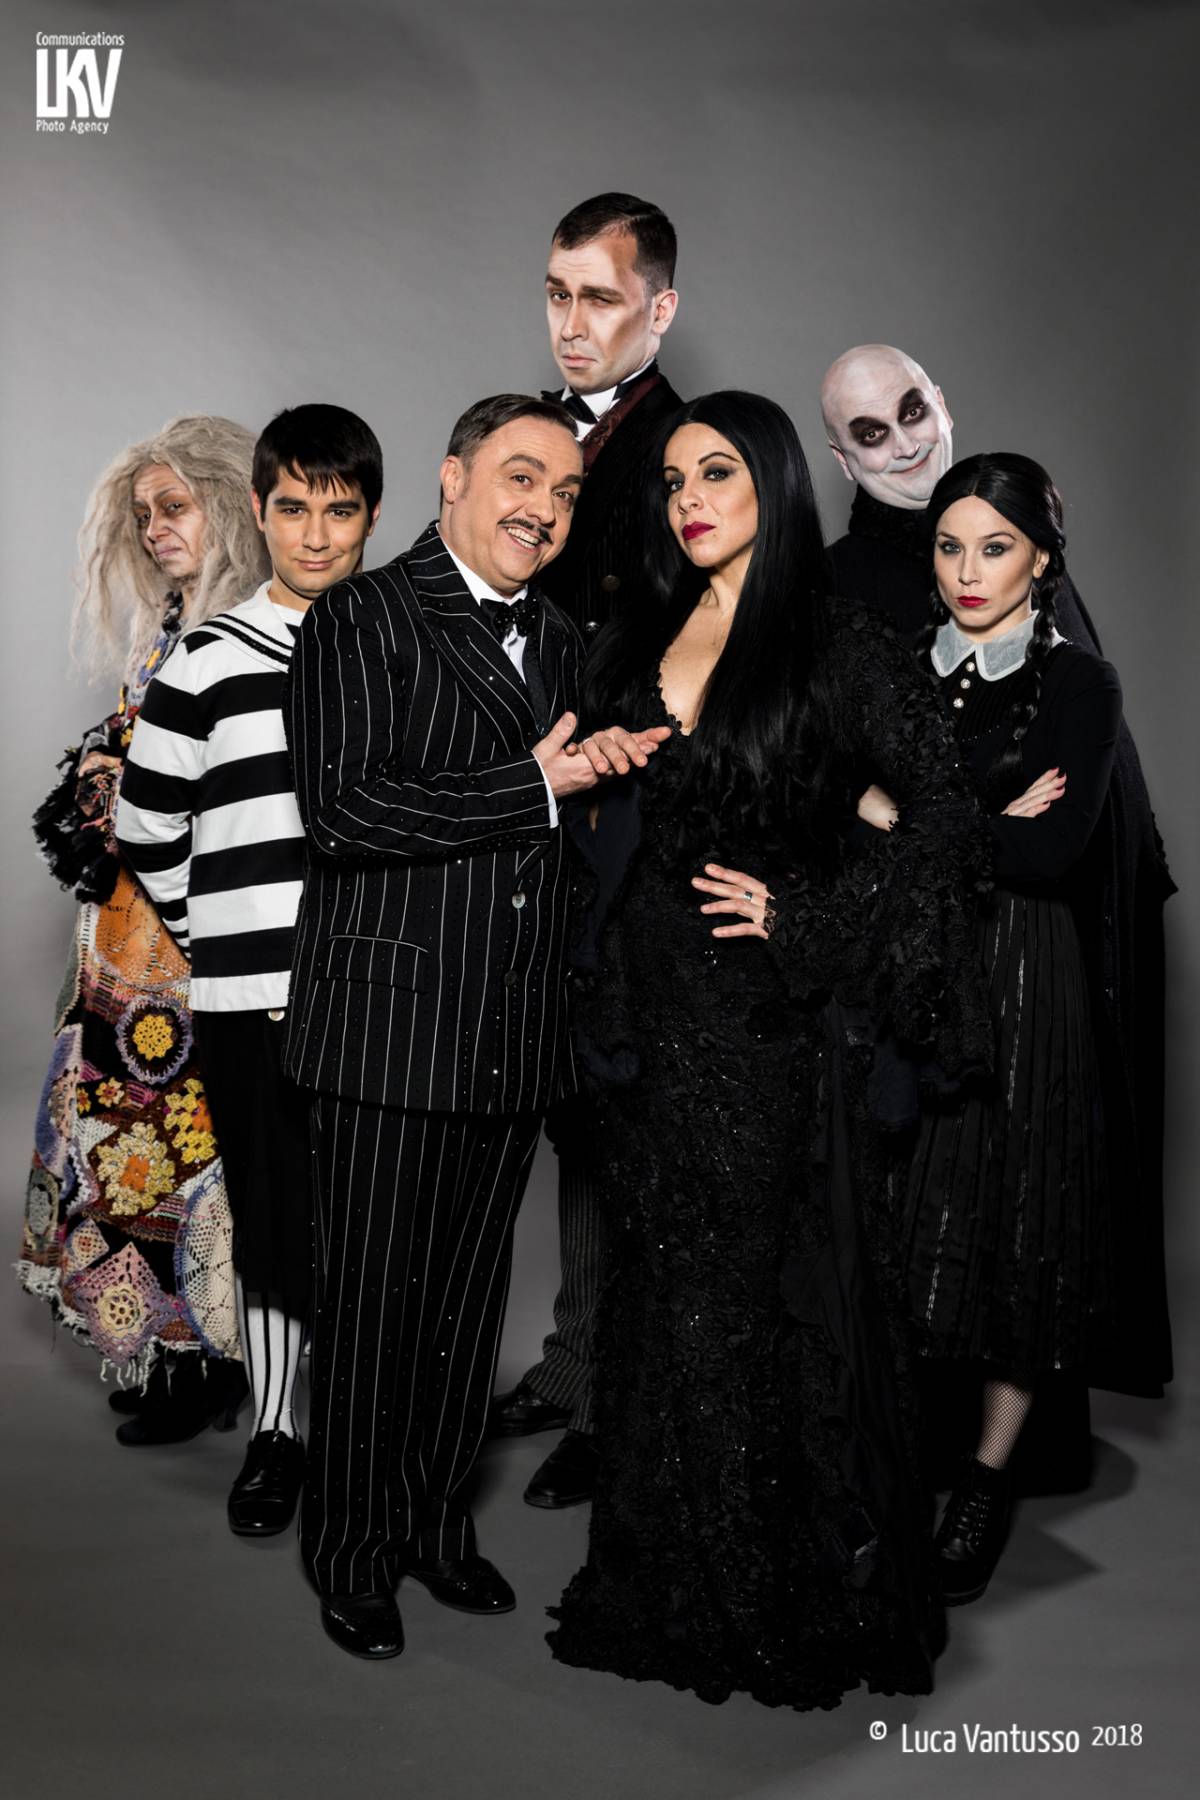 La "Famiglia Addams" trova smalto e ritmo per far ridere da morire